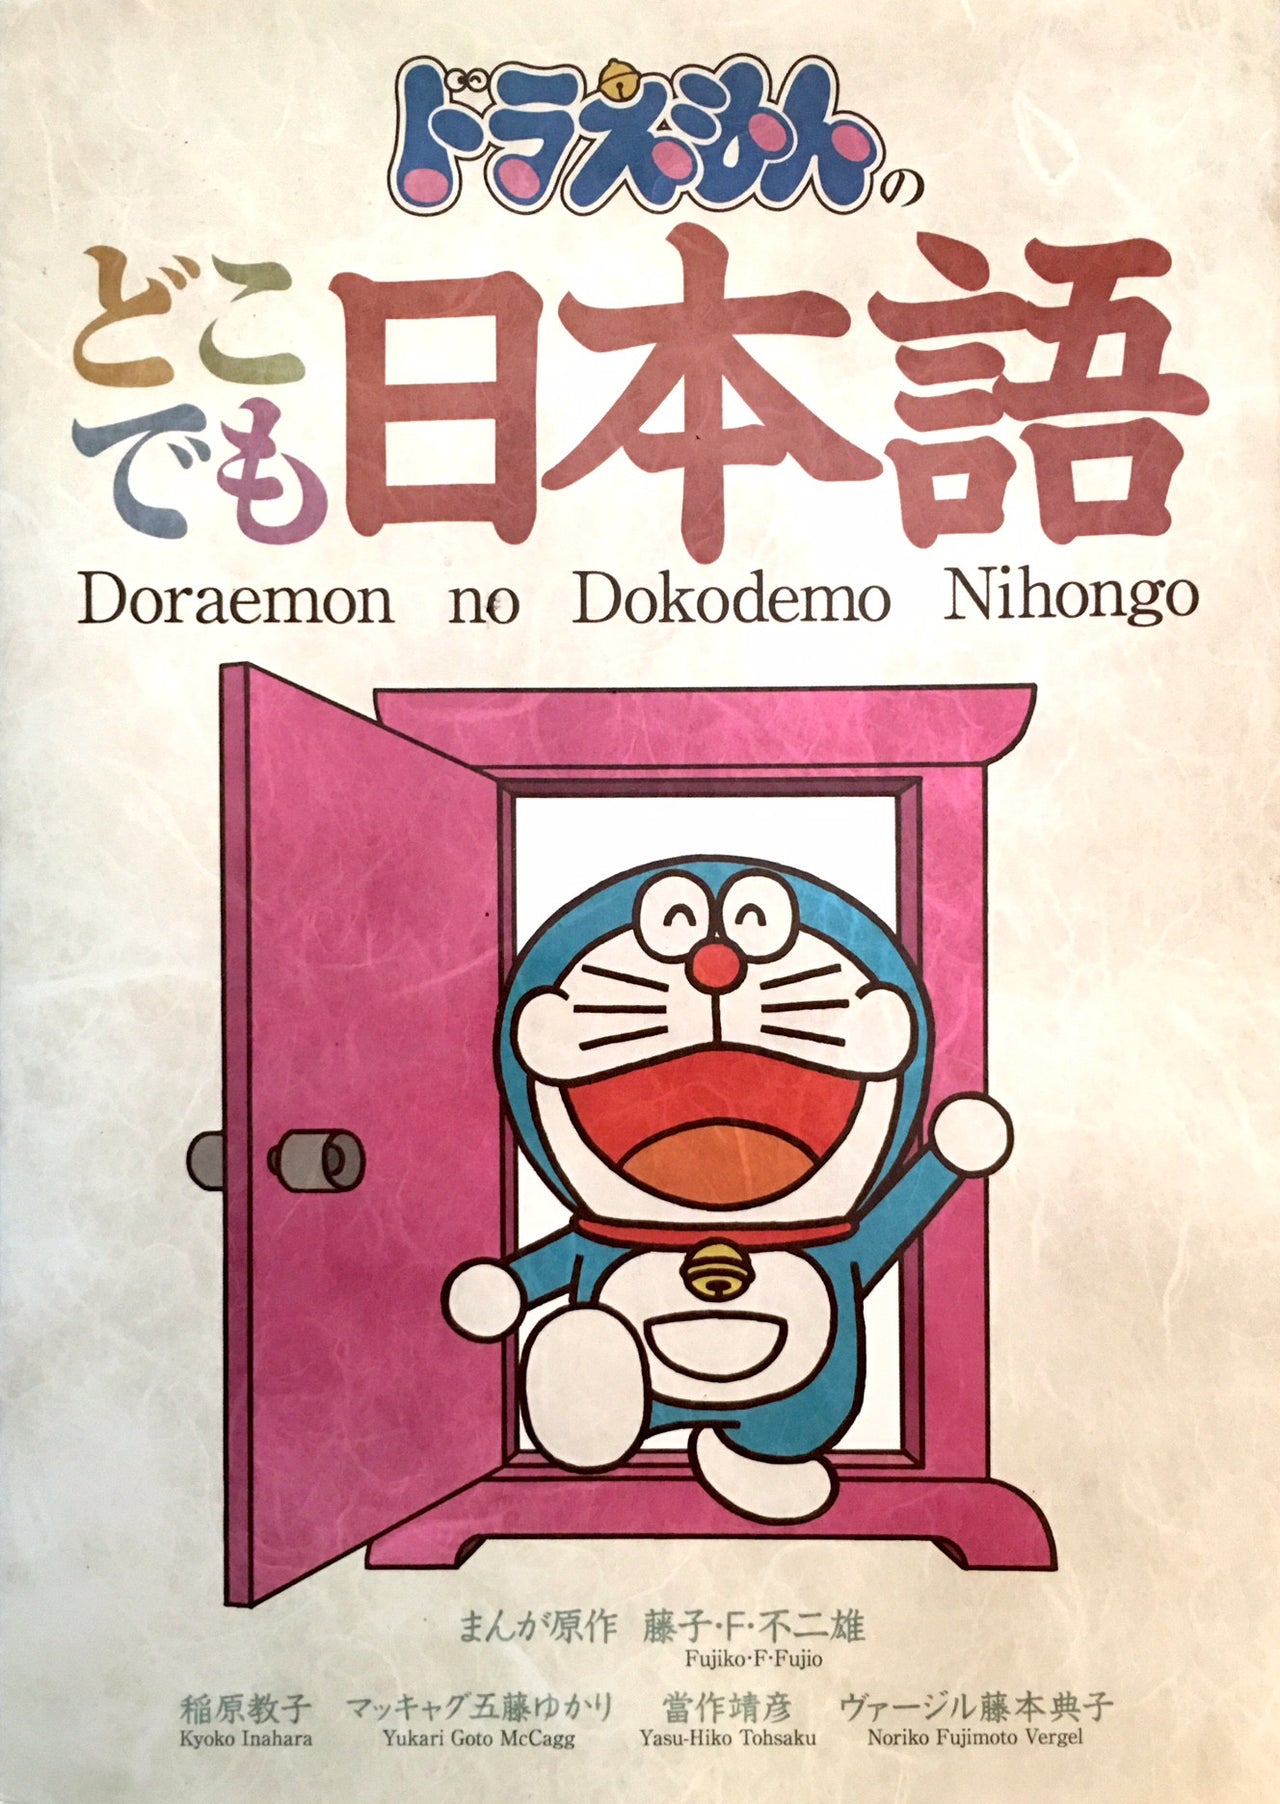 Doraemon no Dokodemo Nihongo - The Japan Shop